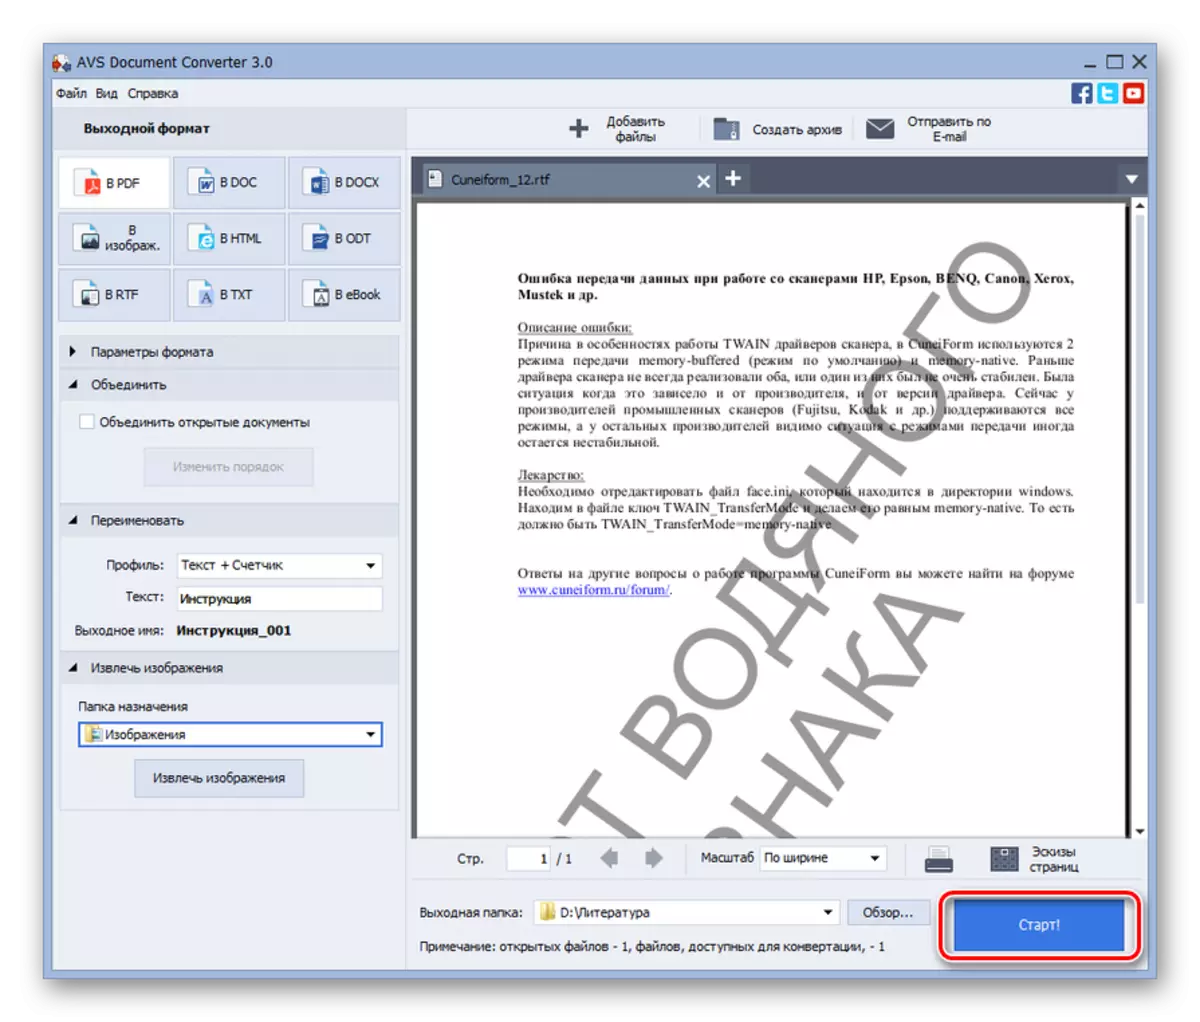 Executando o procedimento de conversão RTF em PDF no Conversor de documentos AVS